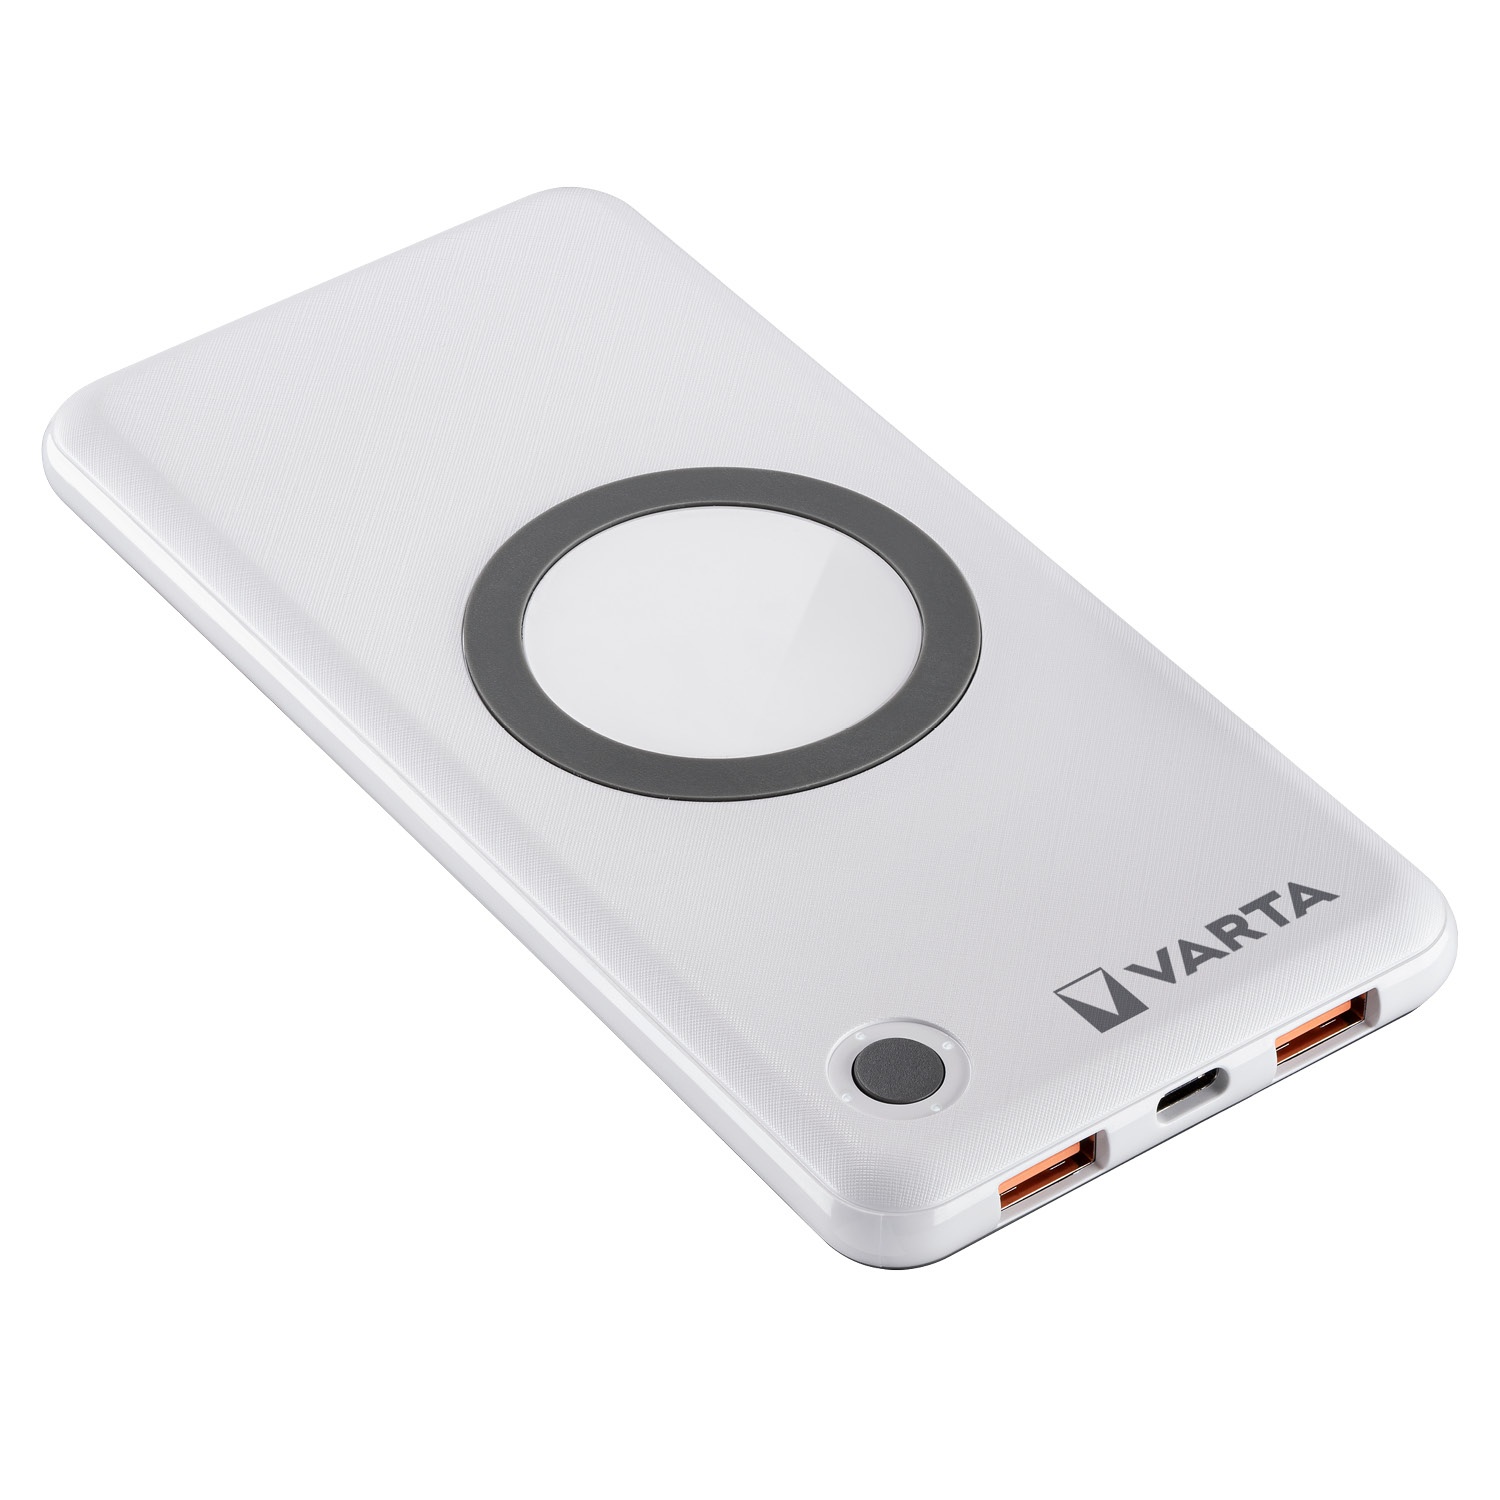 VARTA Wireless-Powerbank